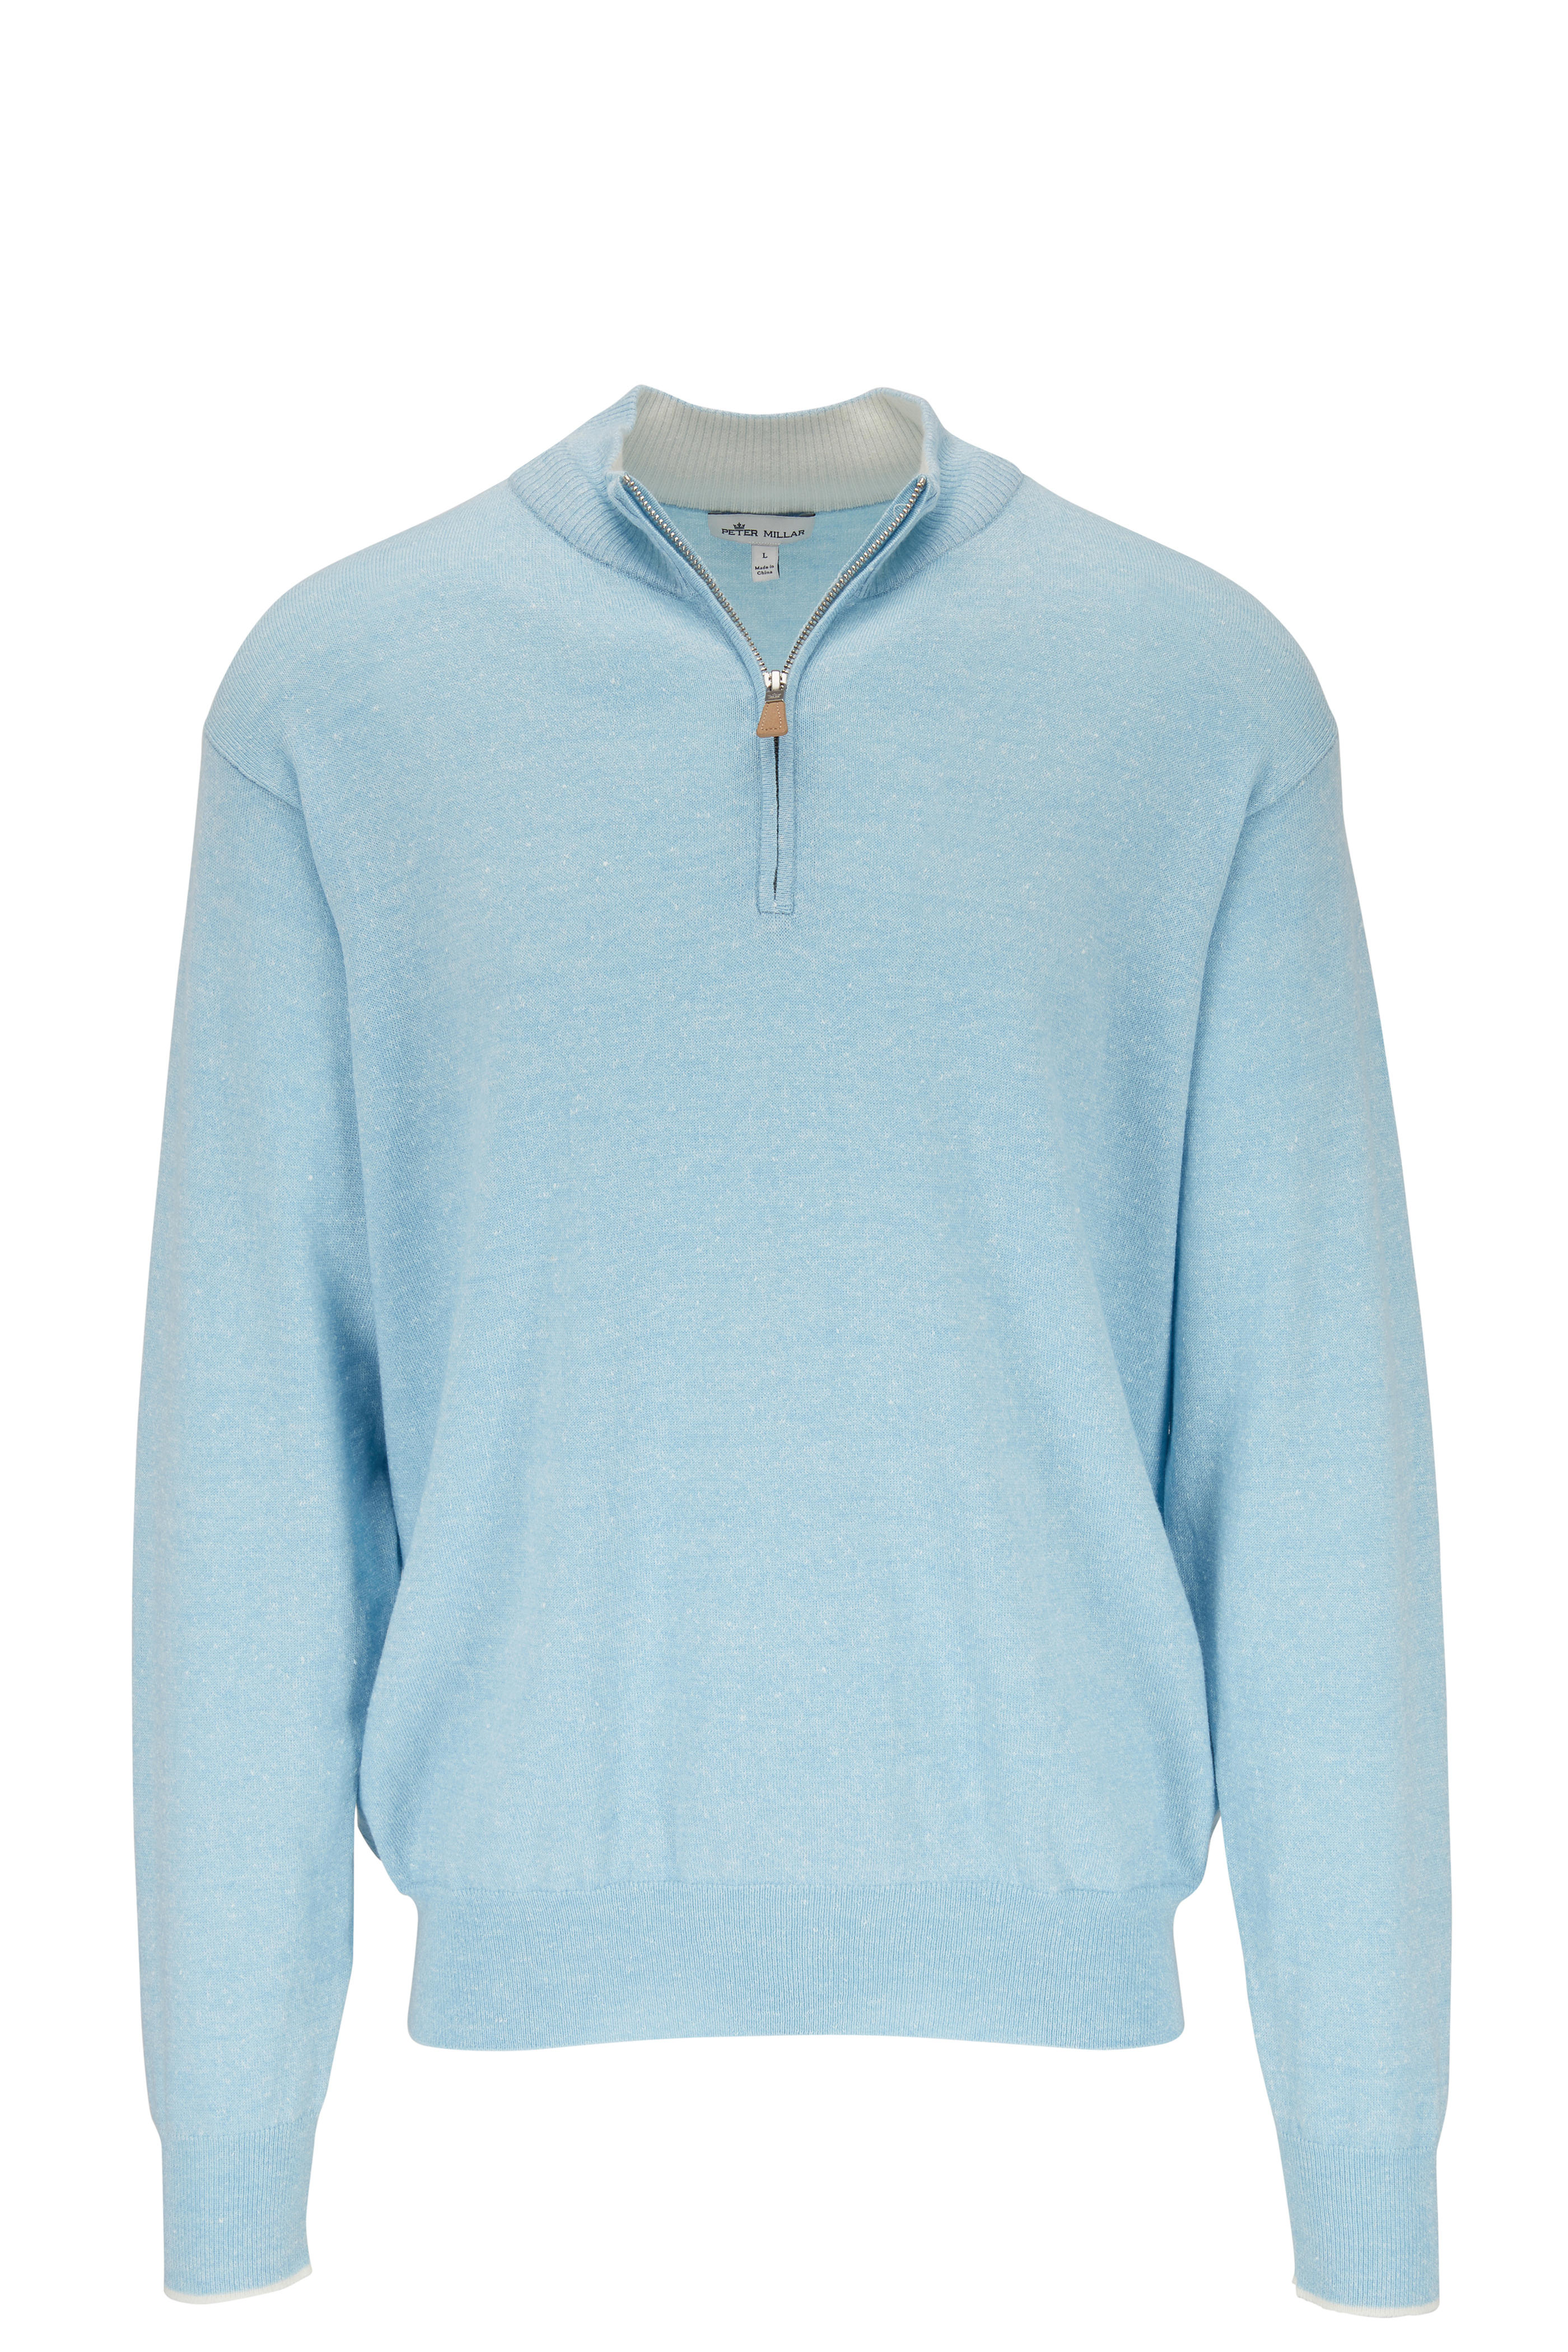 light blue quarter zip sweatshirt